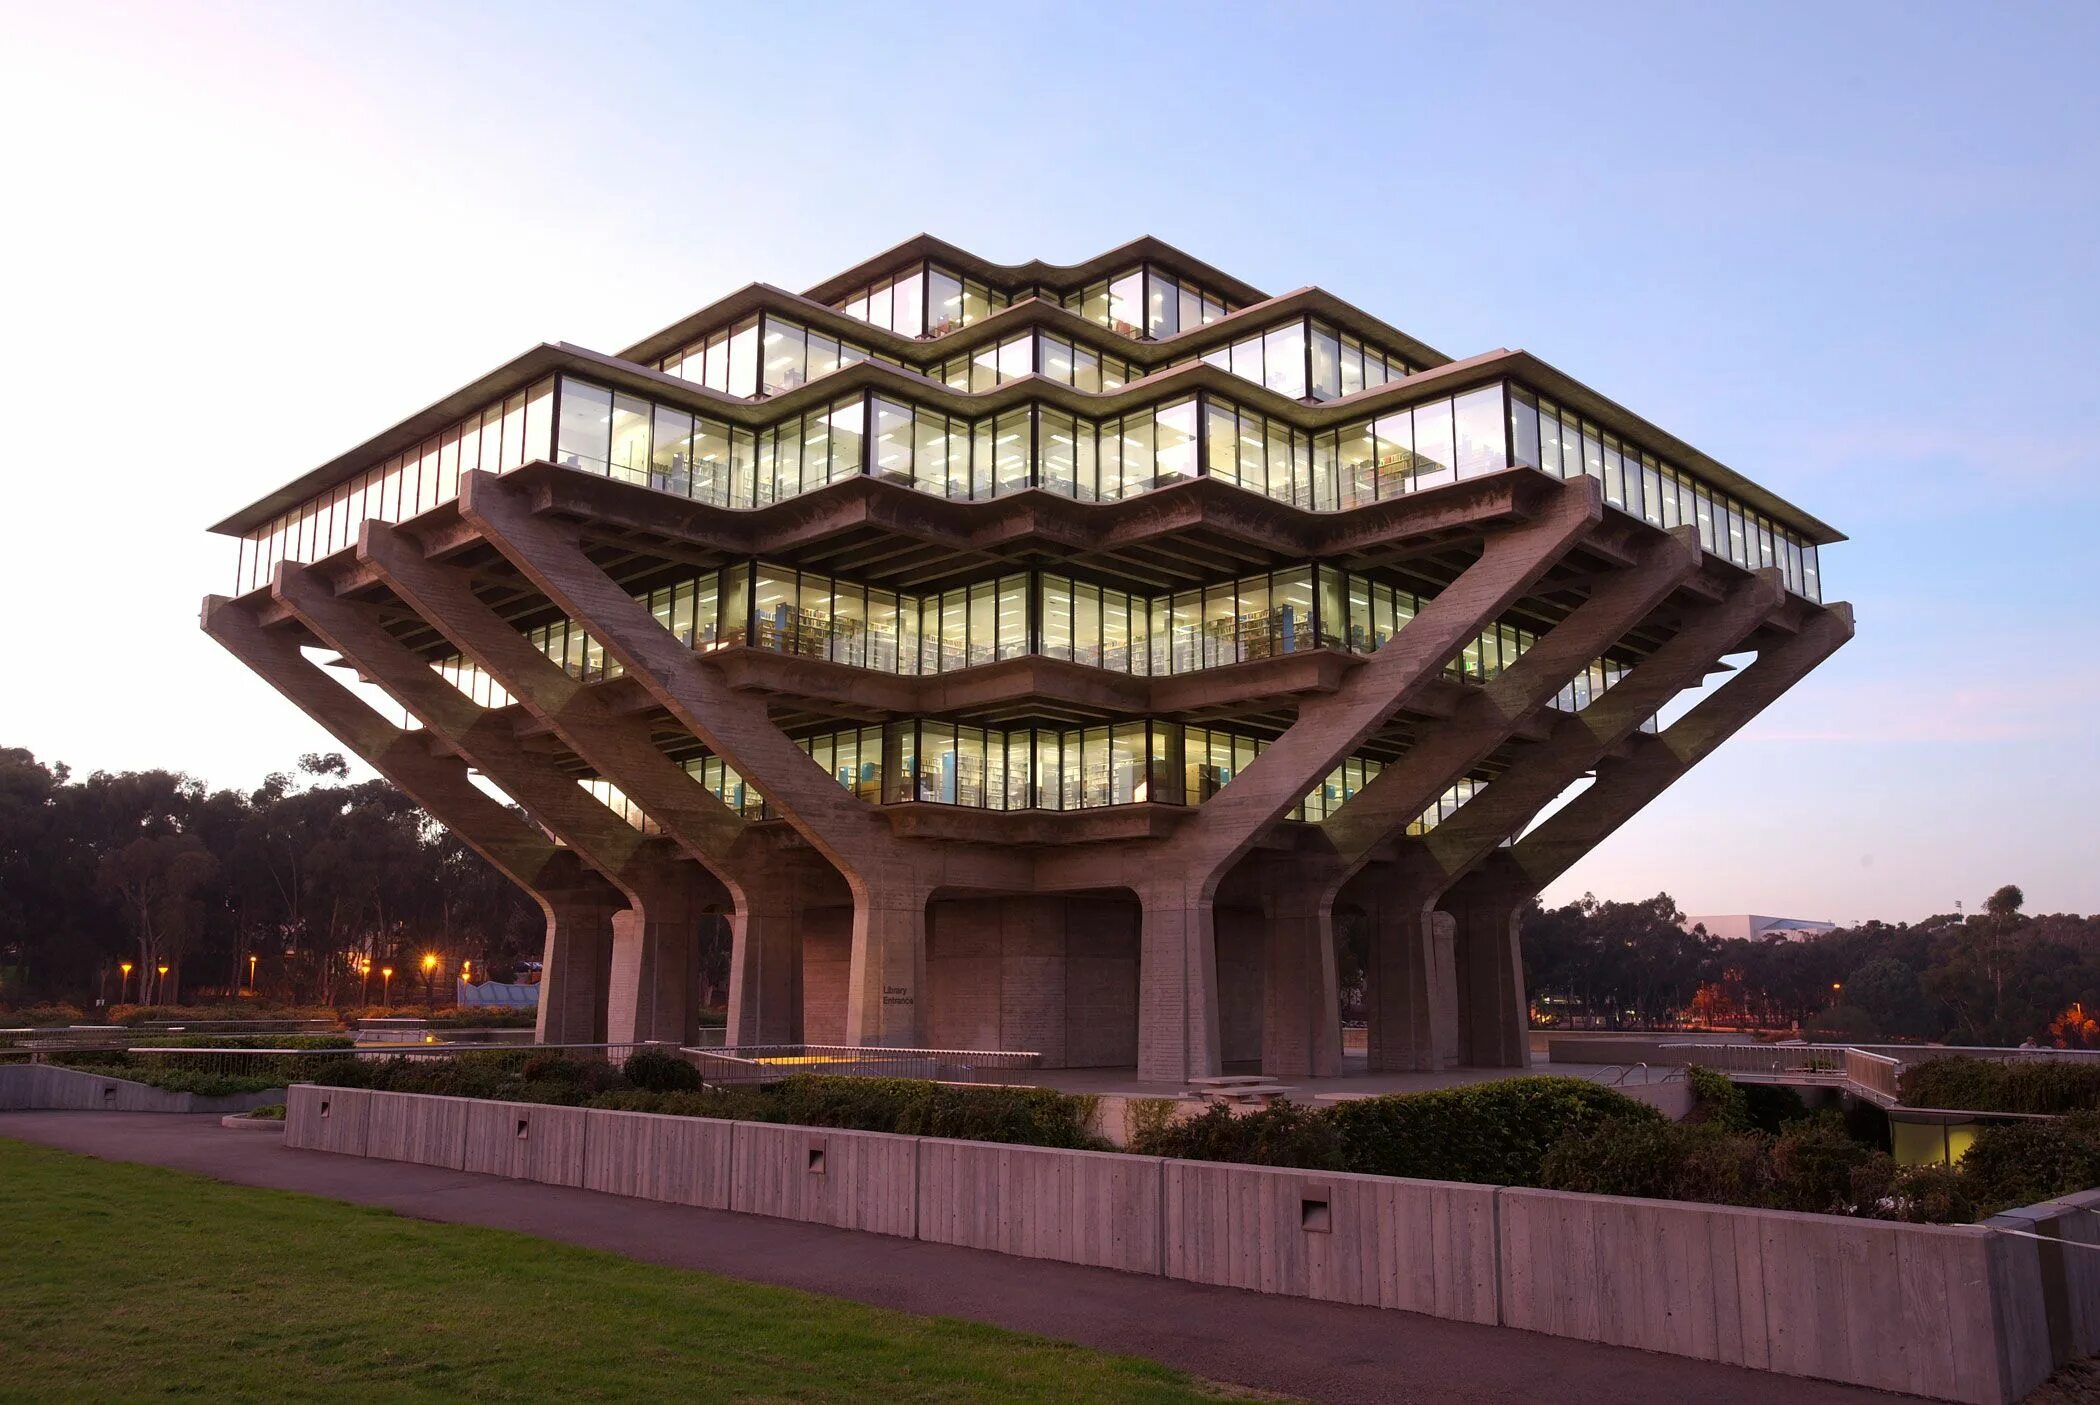 Архитектура architecture. Библиотека Гейзеля в Сан-Диего. Библиотека Гейзеля в Сан-Диего Архитектор. Библиотека Гейзеля, калифорнийский университет, Сан-Диего. Библиотека Гейзеля в Сан-Диего (1970)..